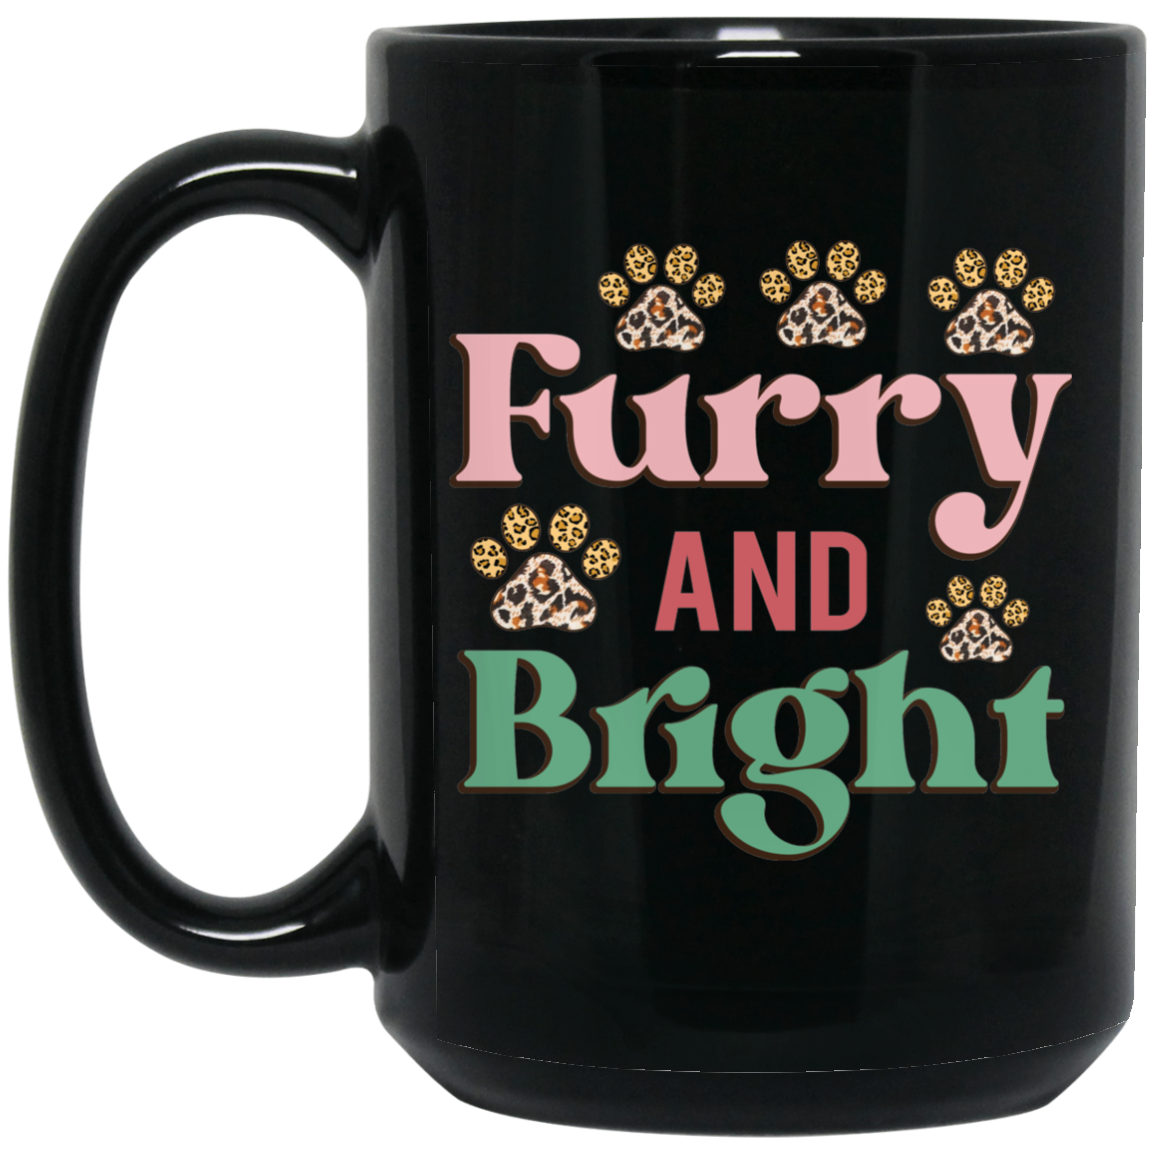 Furry & Bright Christmas Dog 15 oz. Black Mug